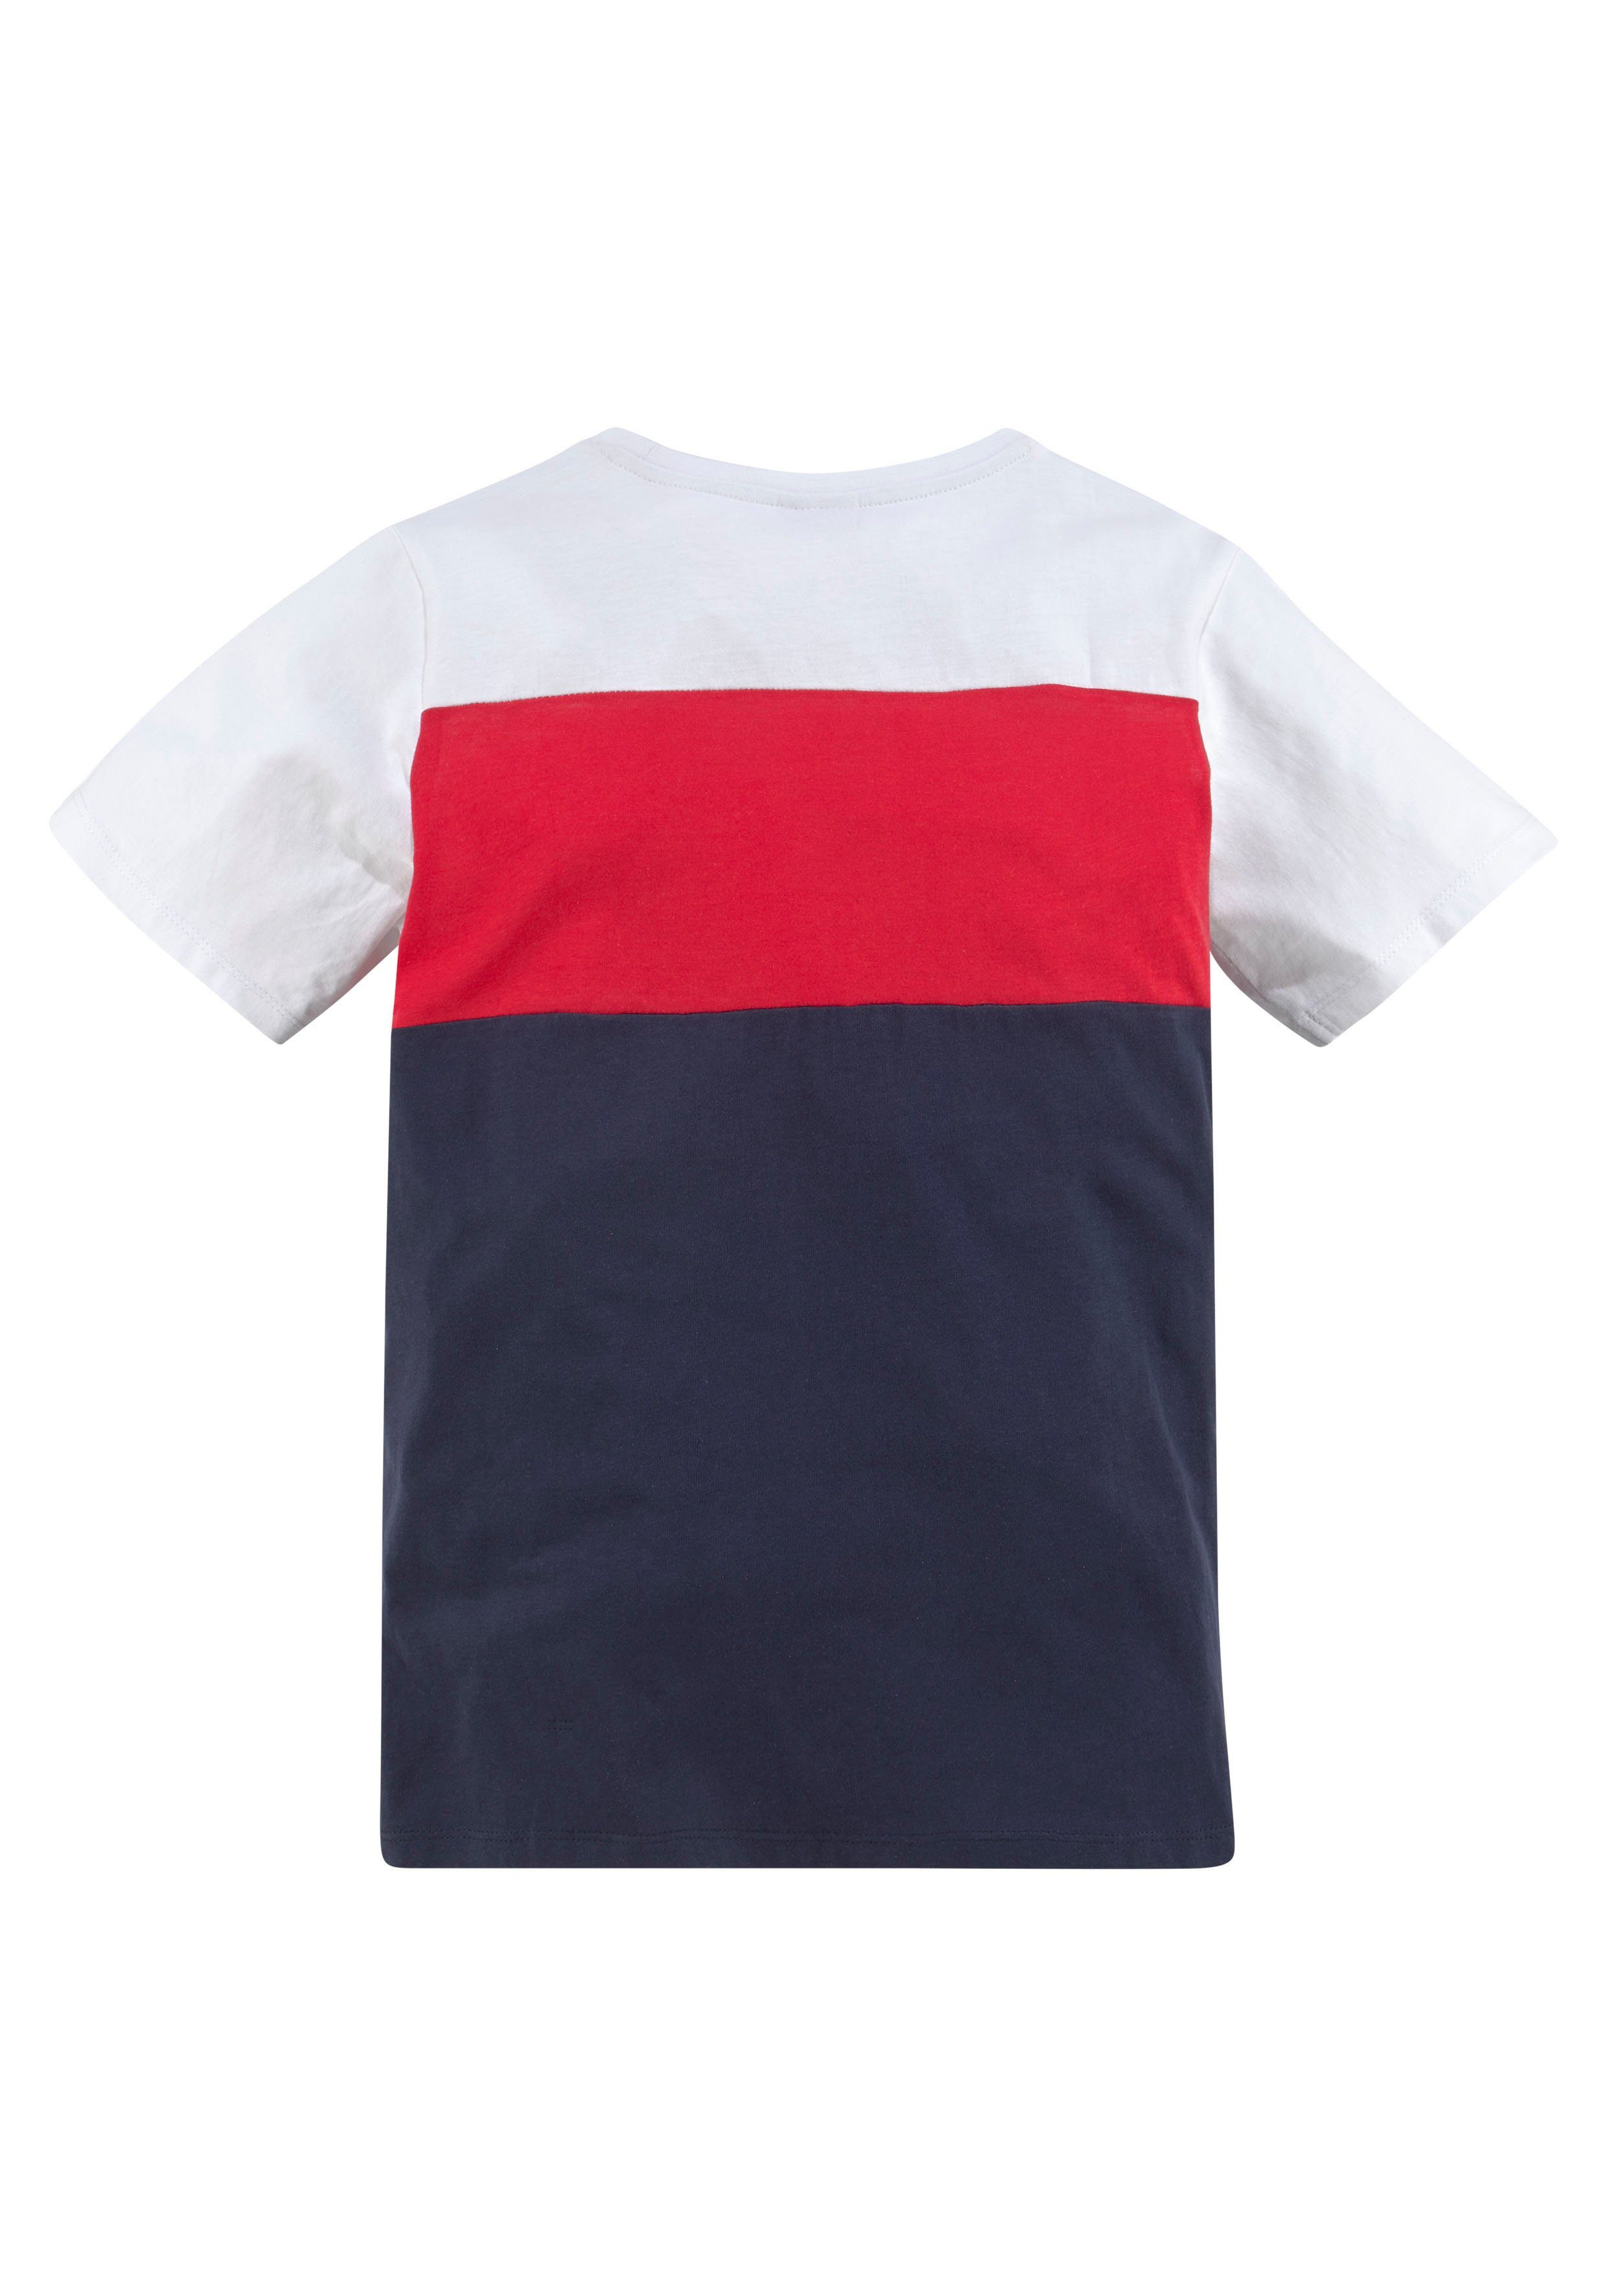 KangaROOS in T-Shirt Colorblockdesign